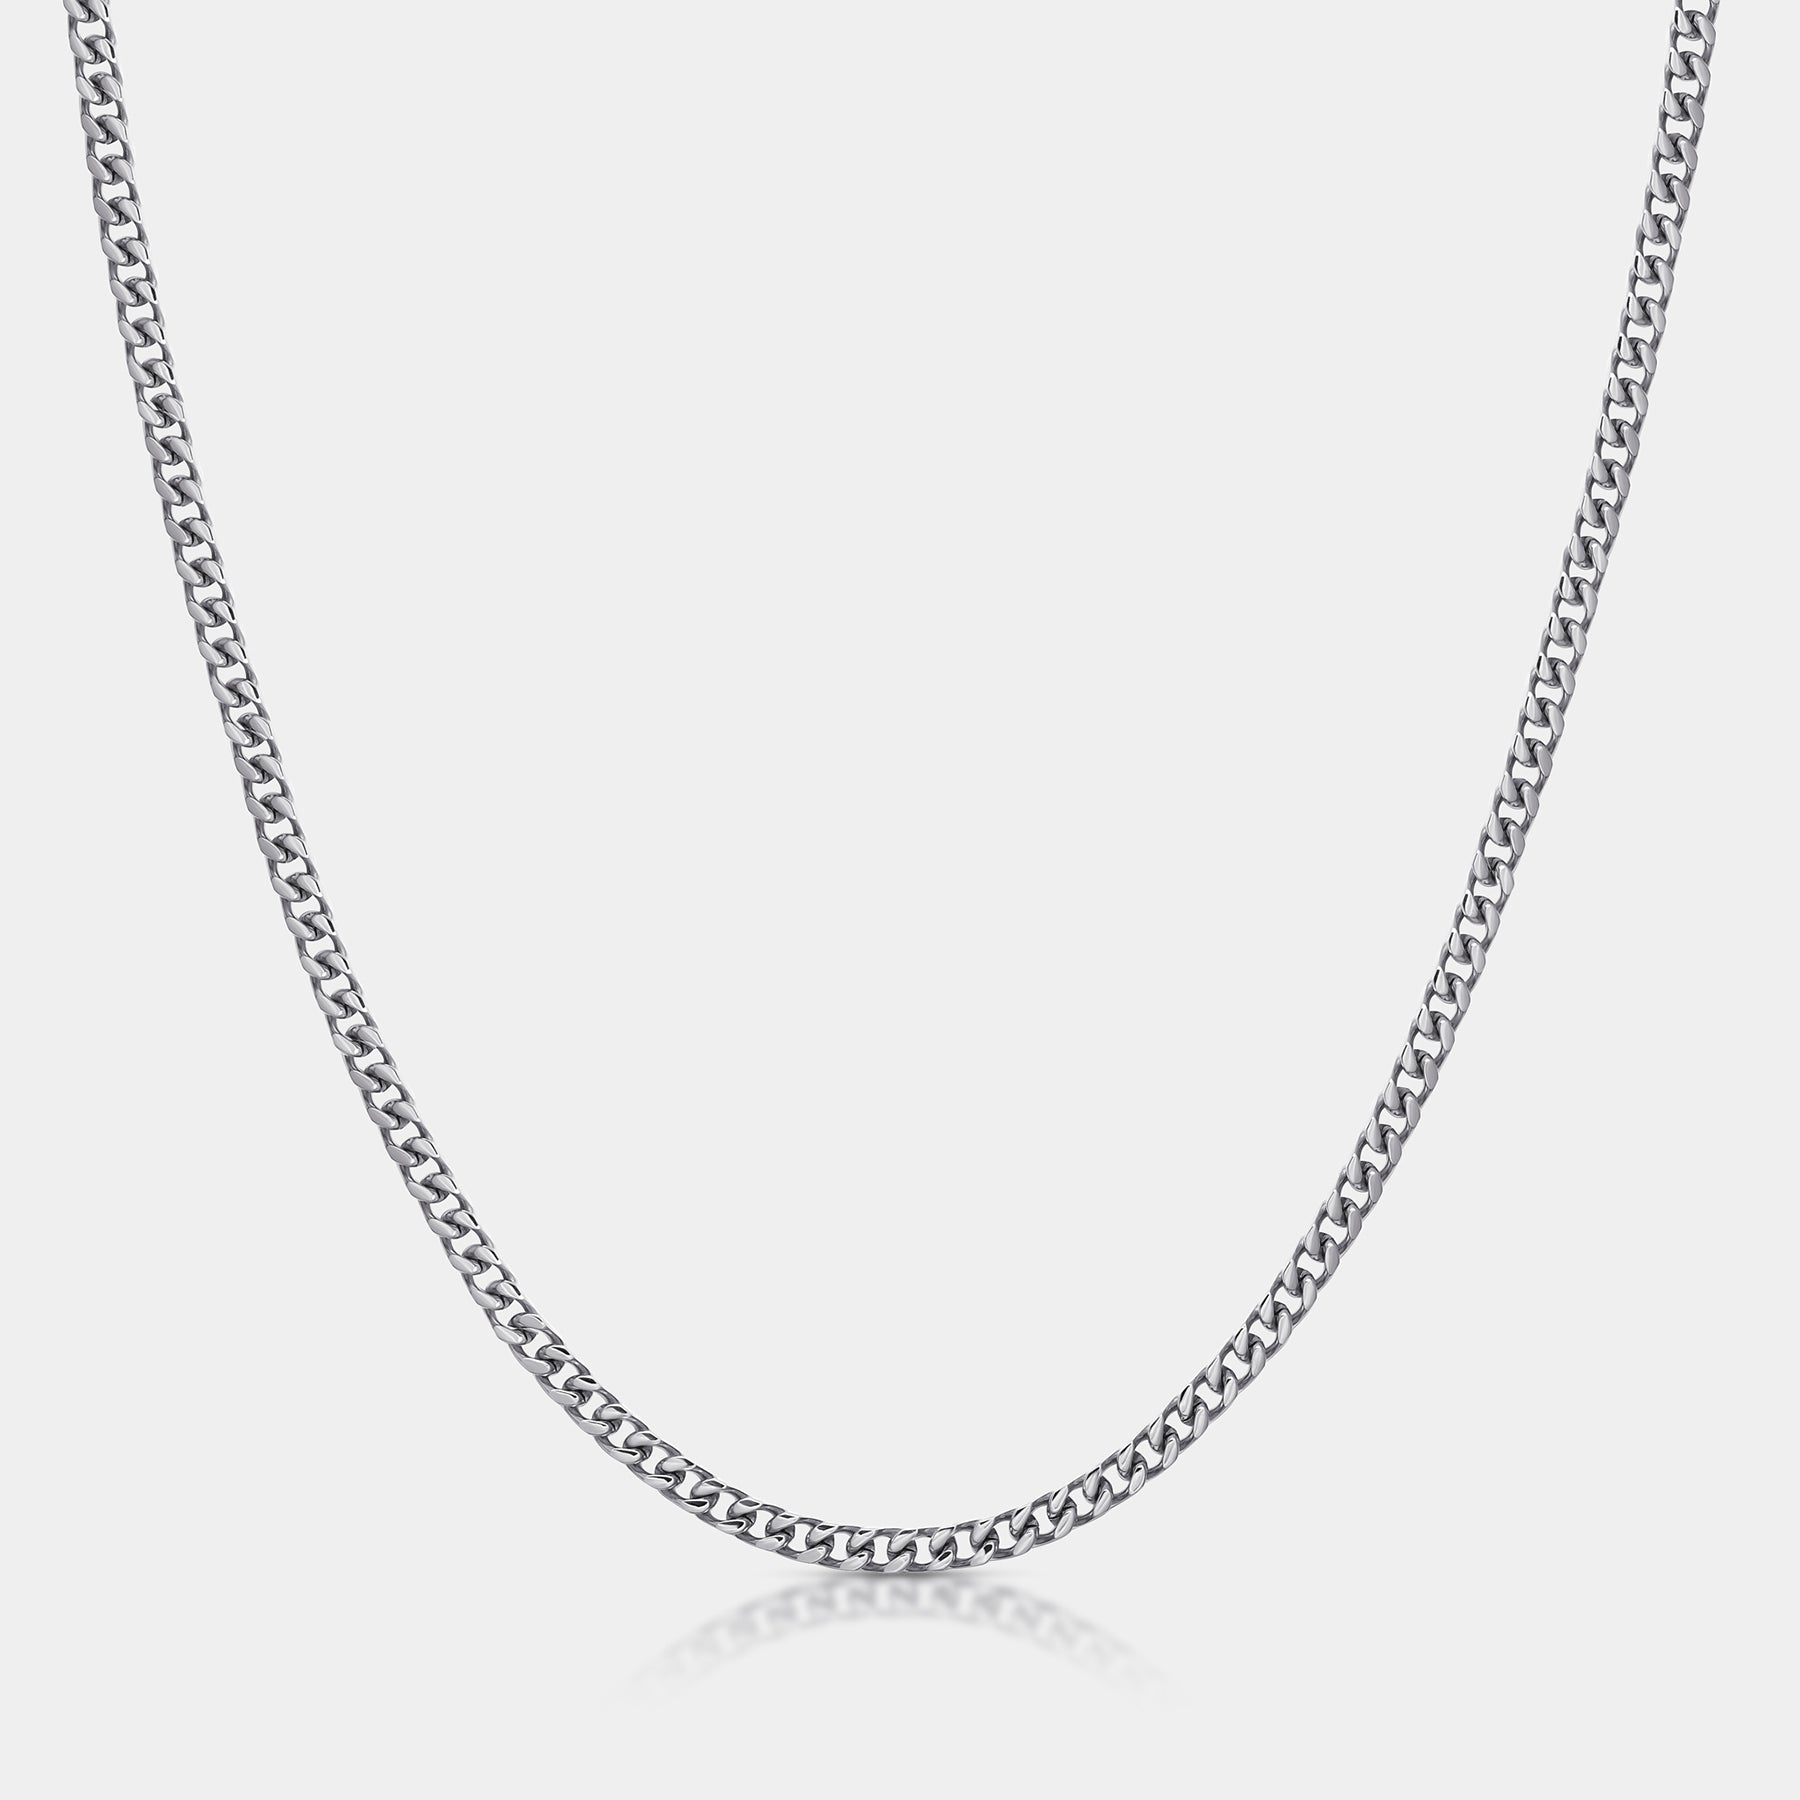 Cuban Chain Necklace Silver (4mm) - Elegatto